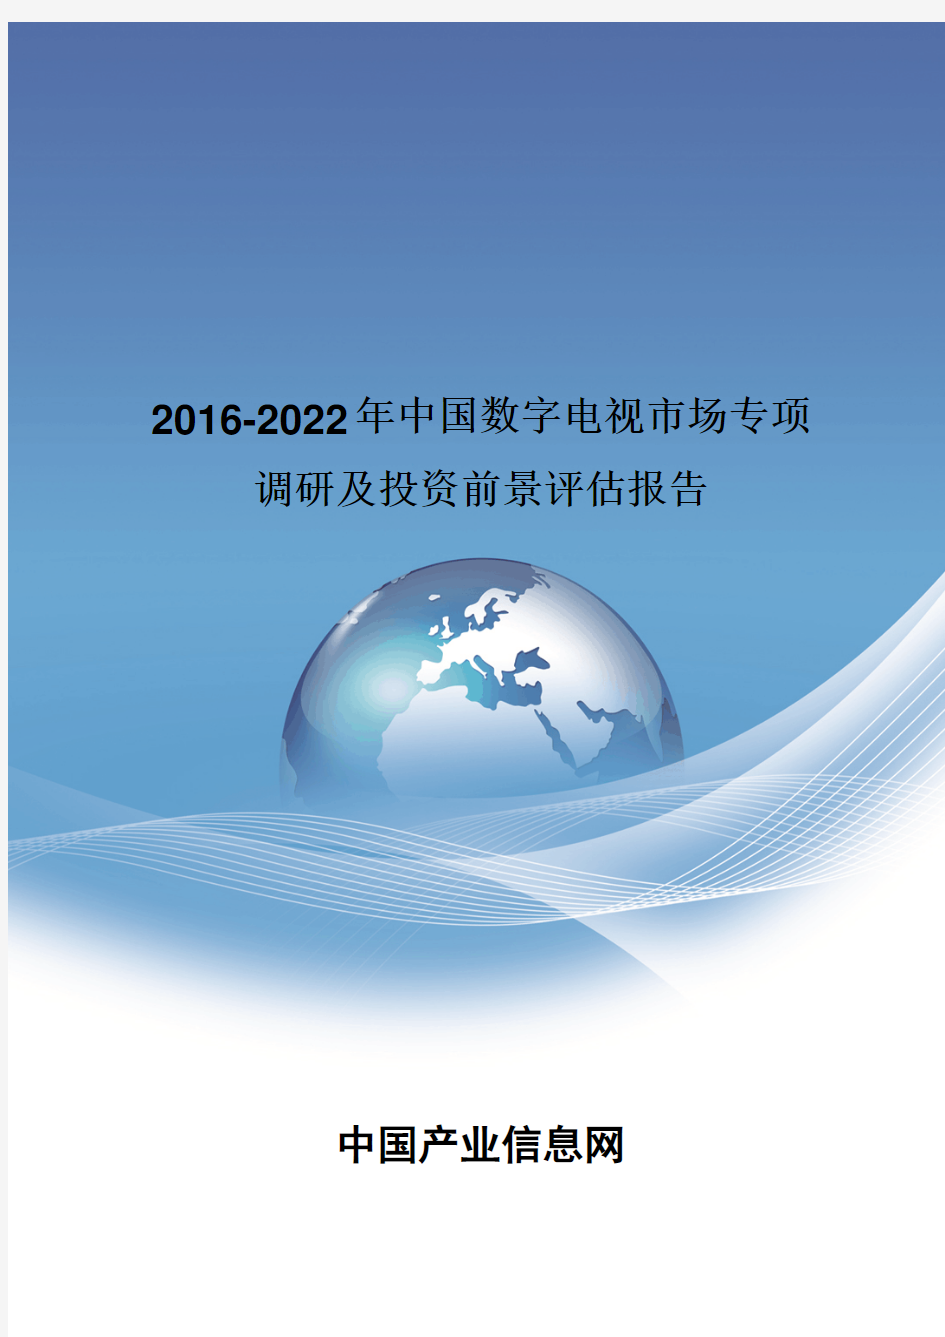 2016-2022年中国数字电视市场投资前景评估报告